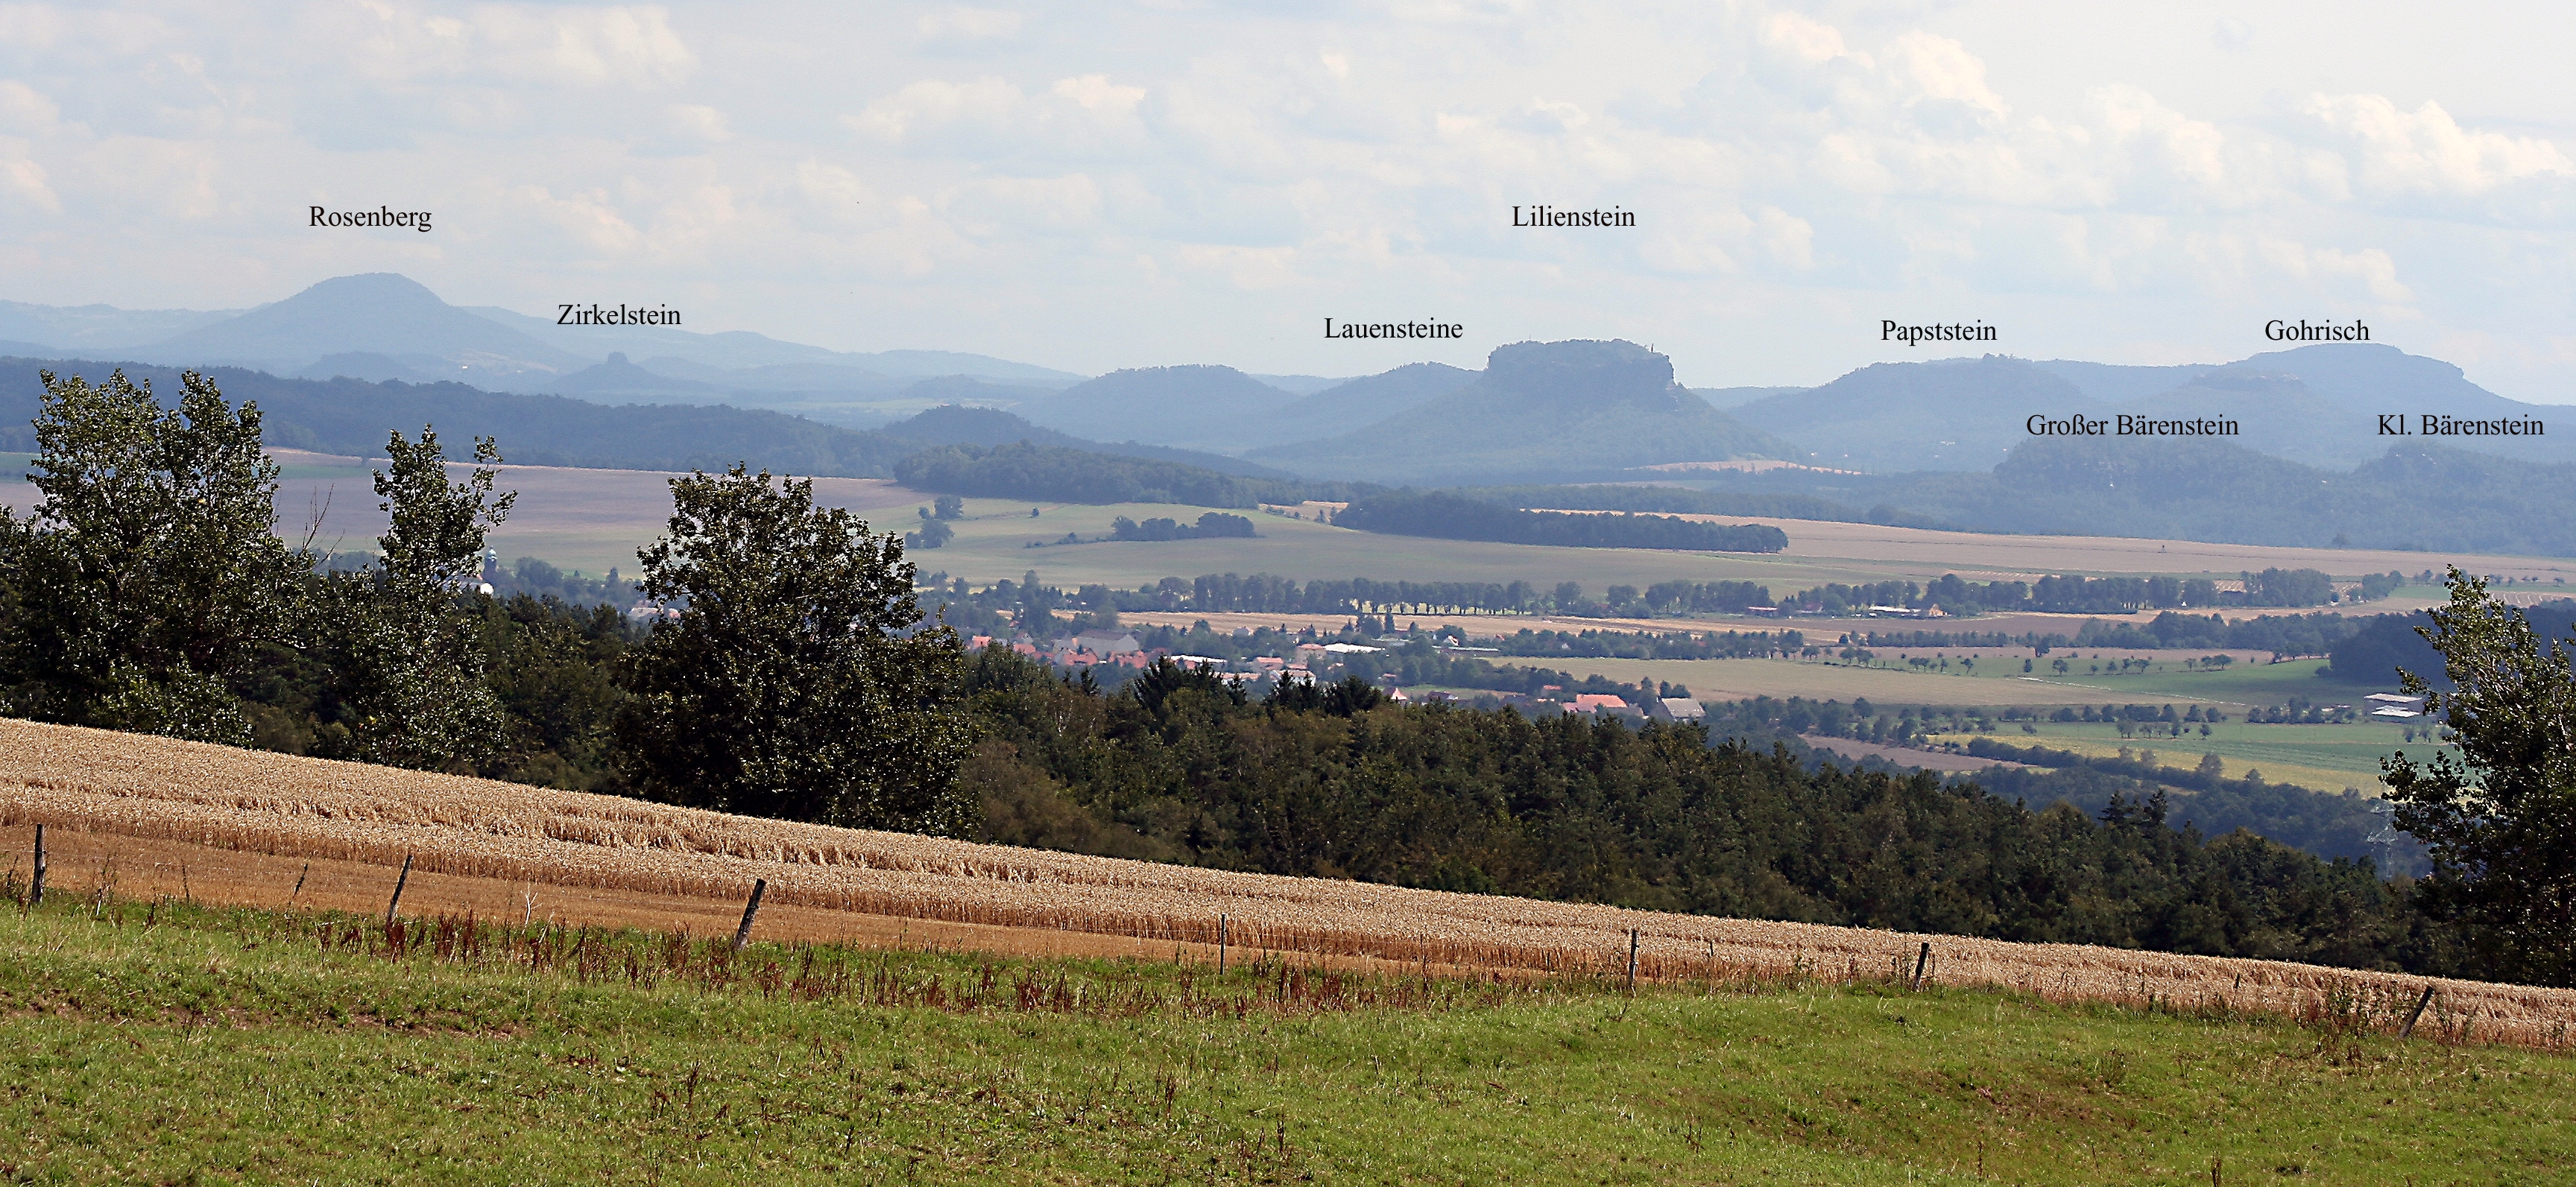 Blick vom Triebenberg in die Sächsische Schweiz

Foto: R. Franz